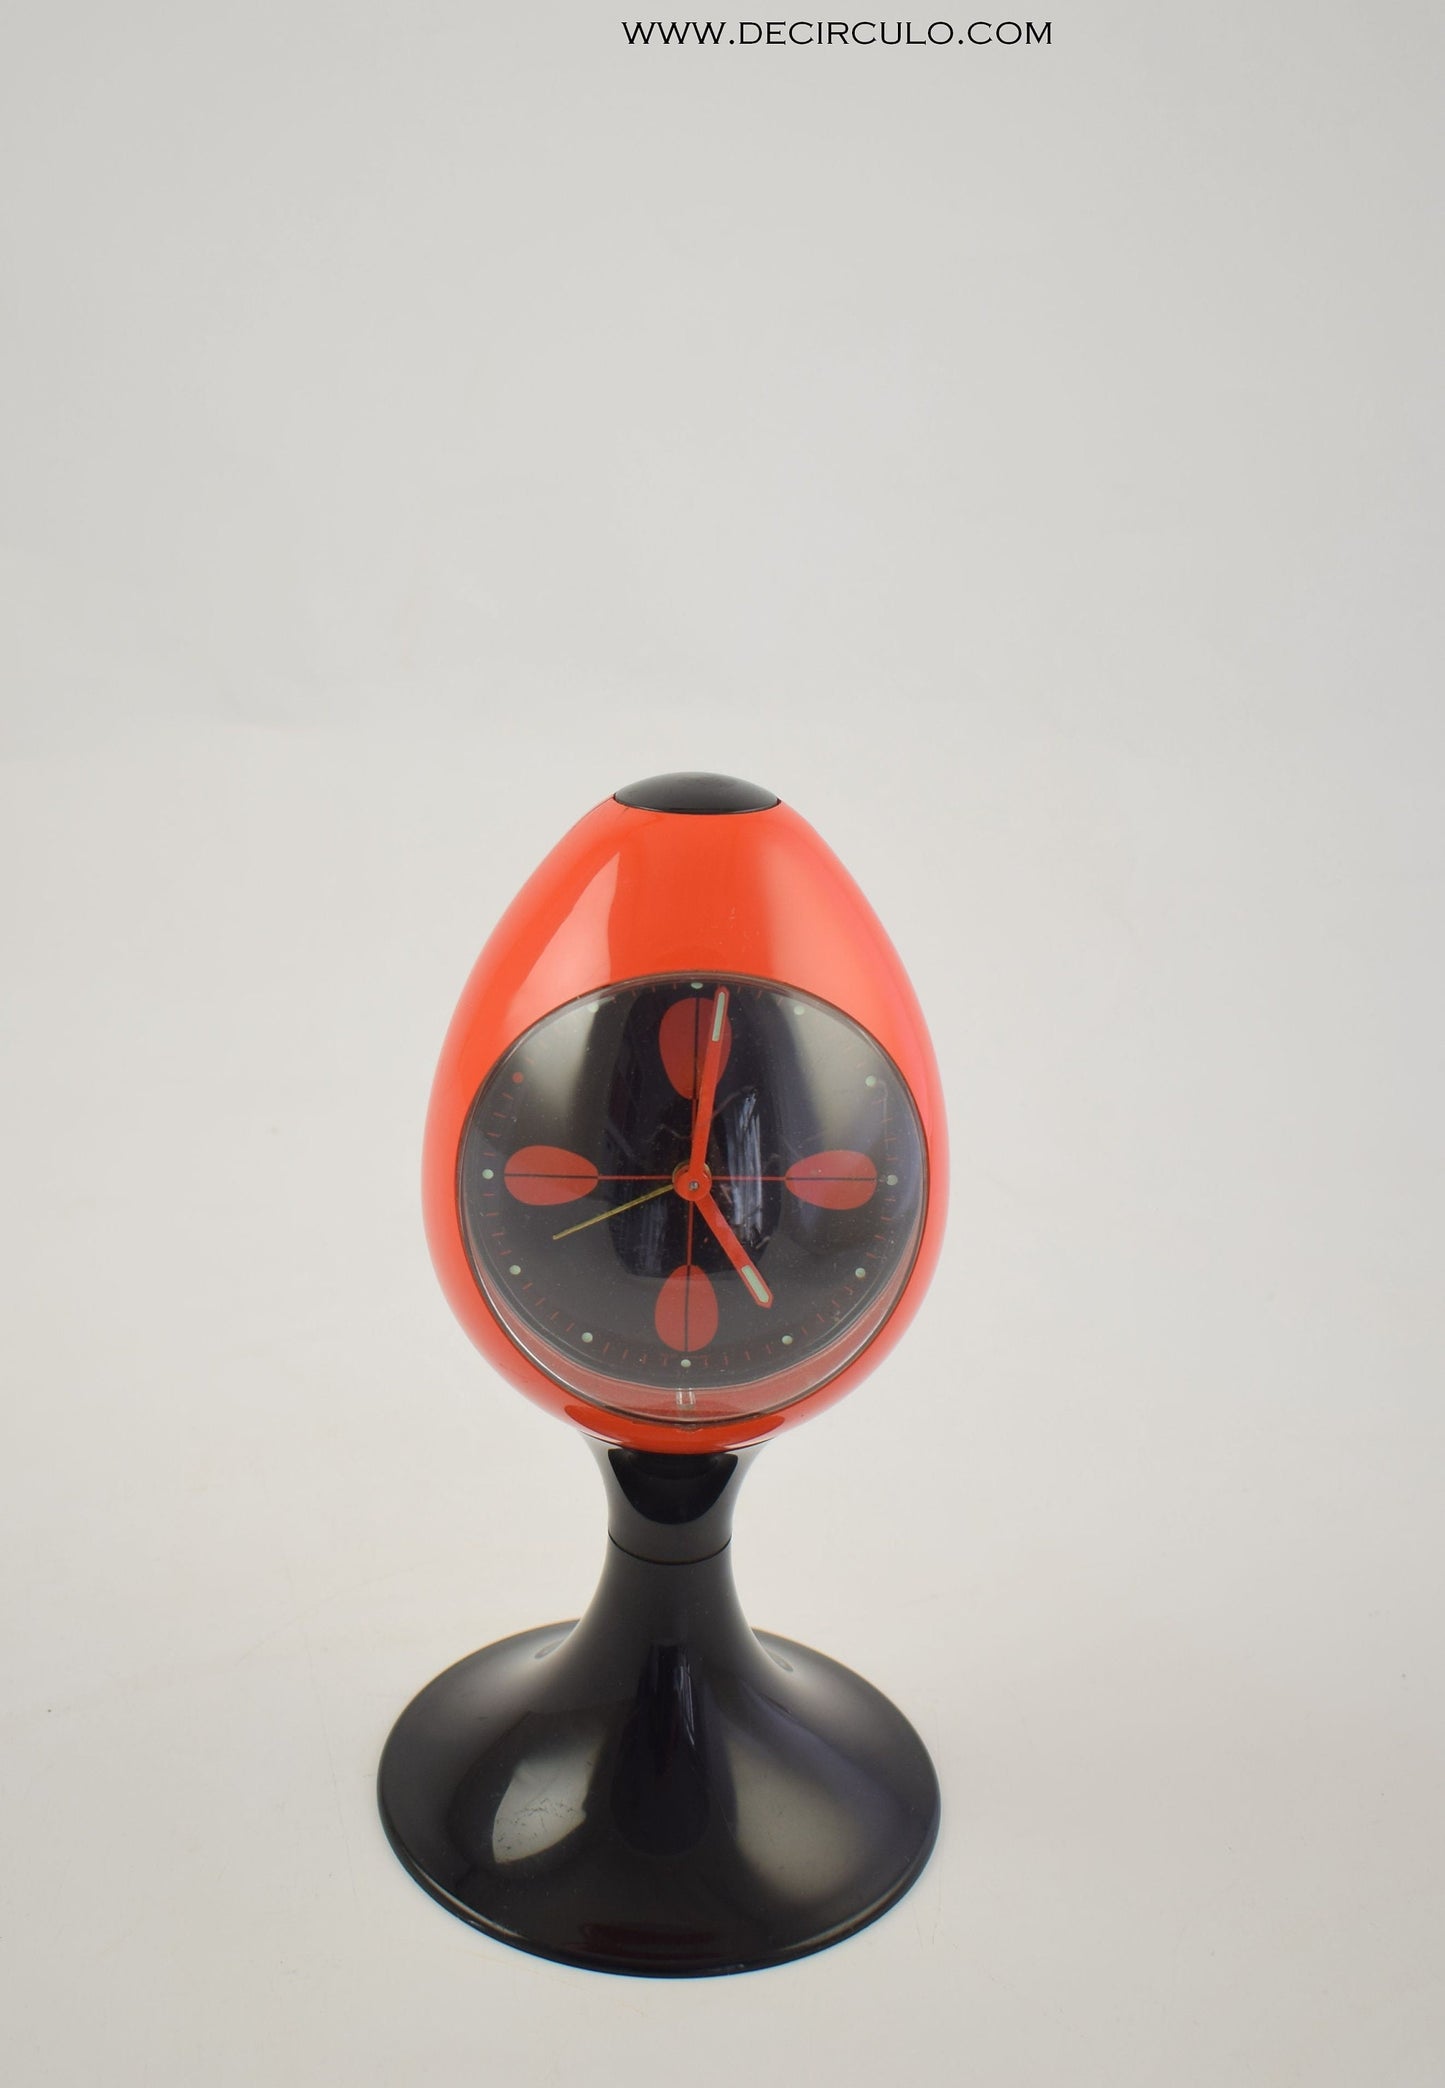 Reloj despertador rojo con pedestal negro en forma de tulipán, fabricado en Alemania. Era espacial, hecha de plástico desde principios de los años 1970